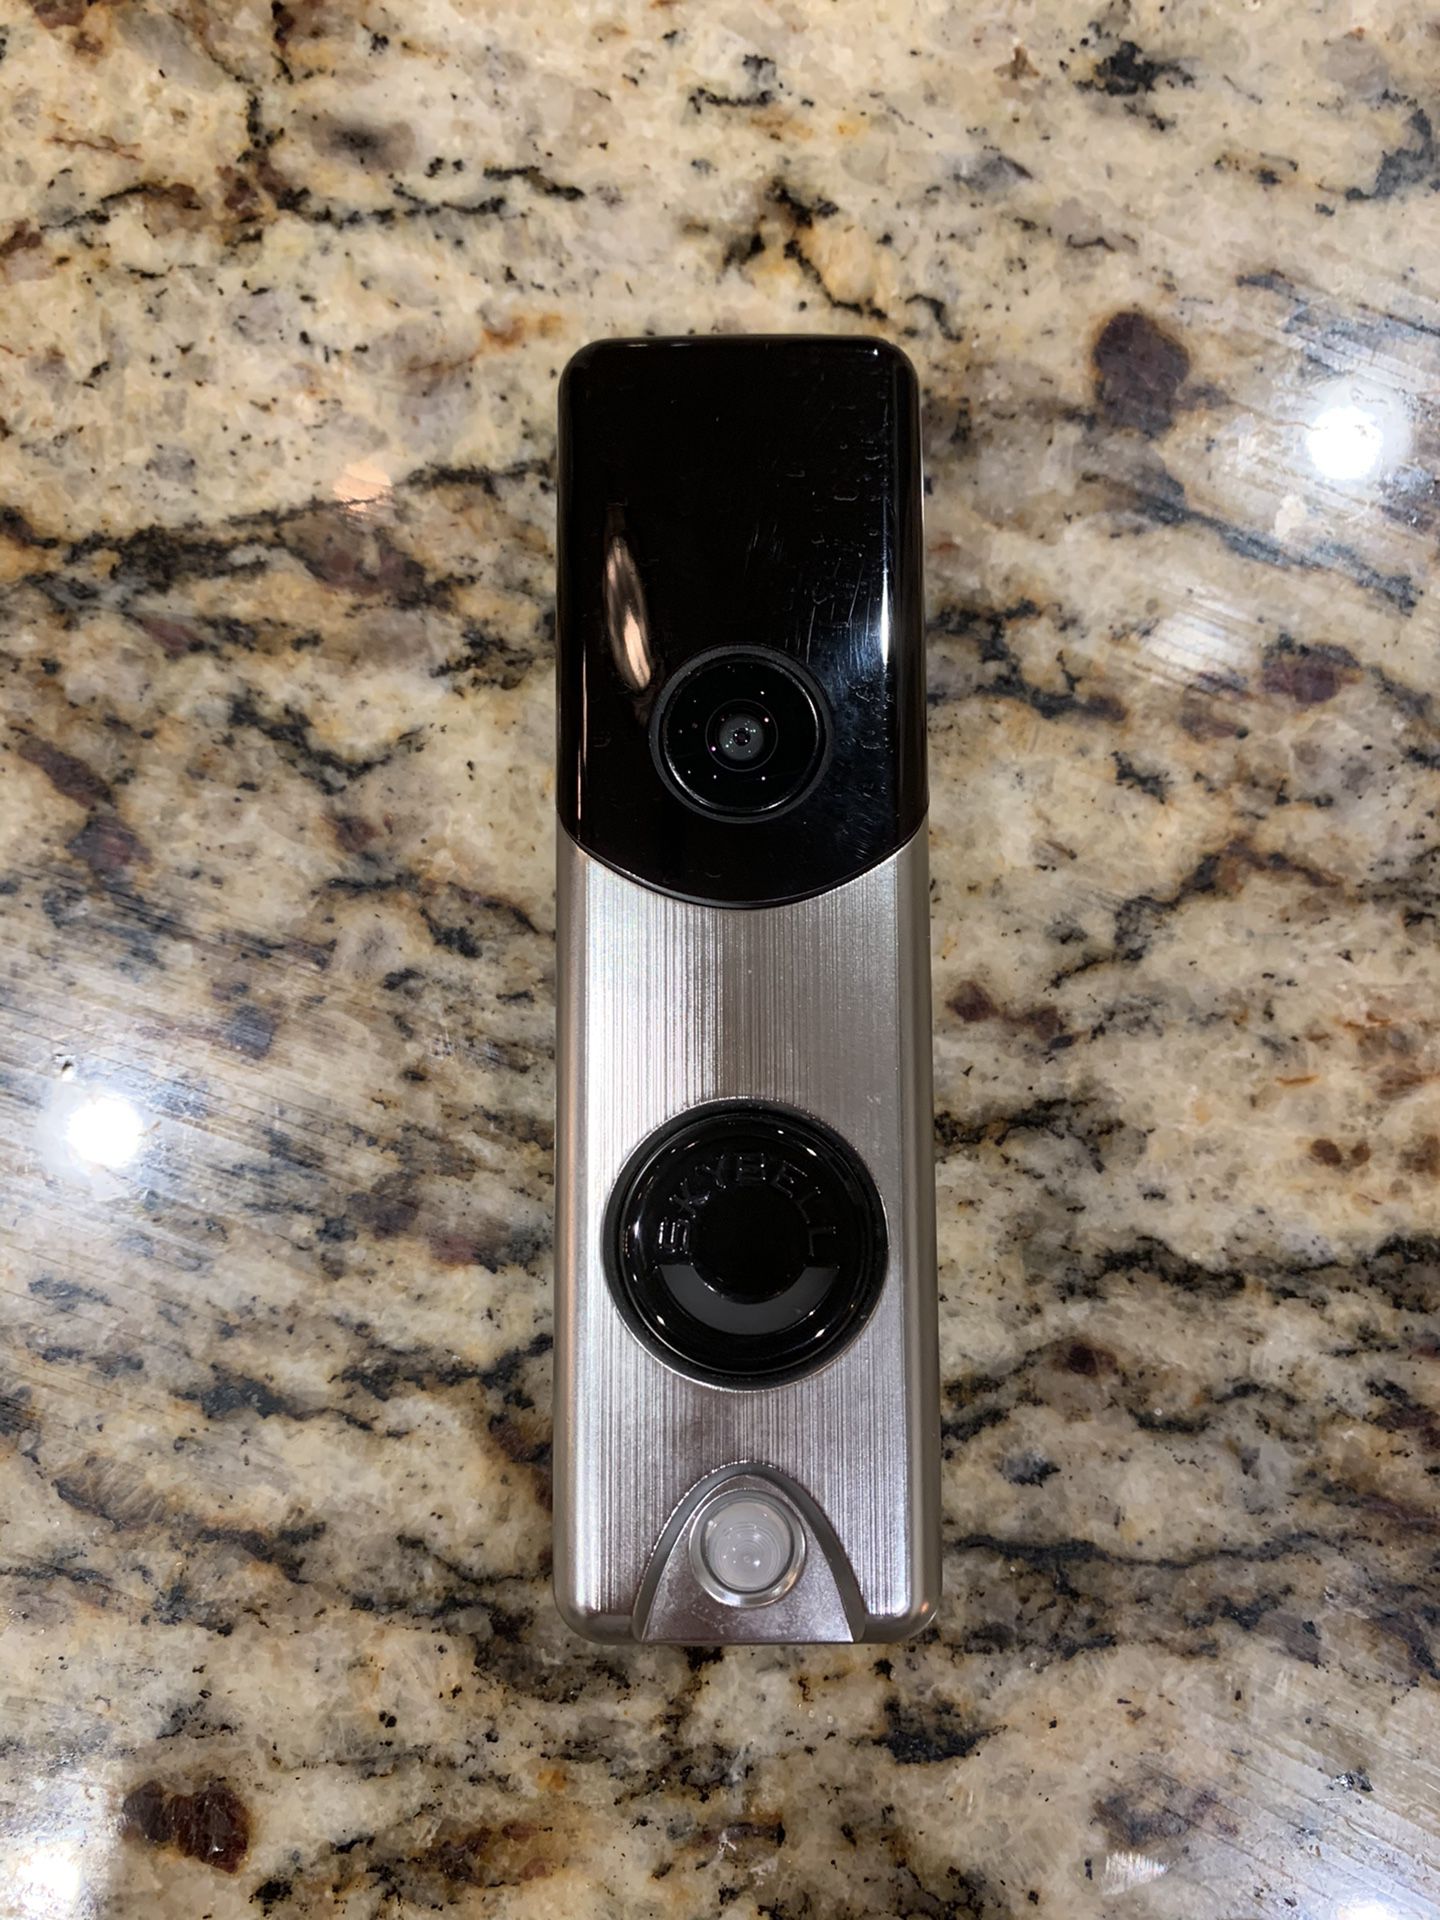 SkyBell Doorbell Camera